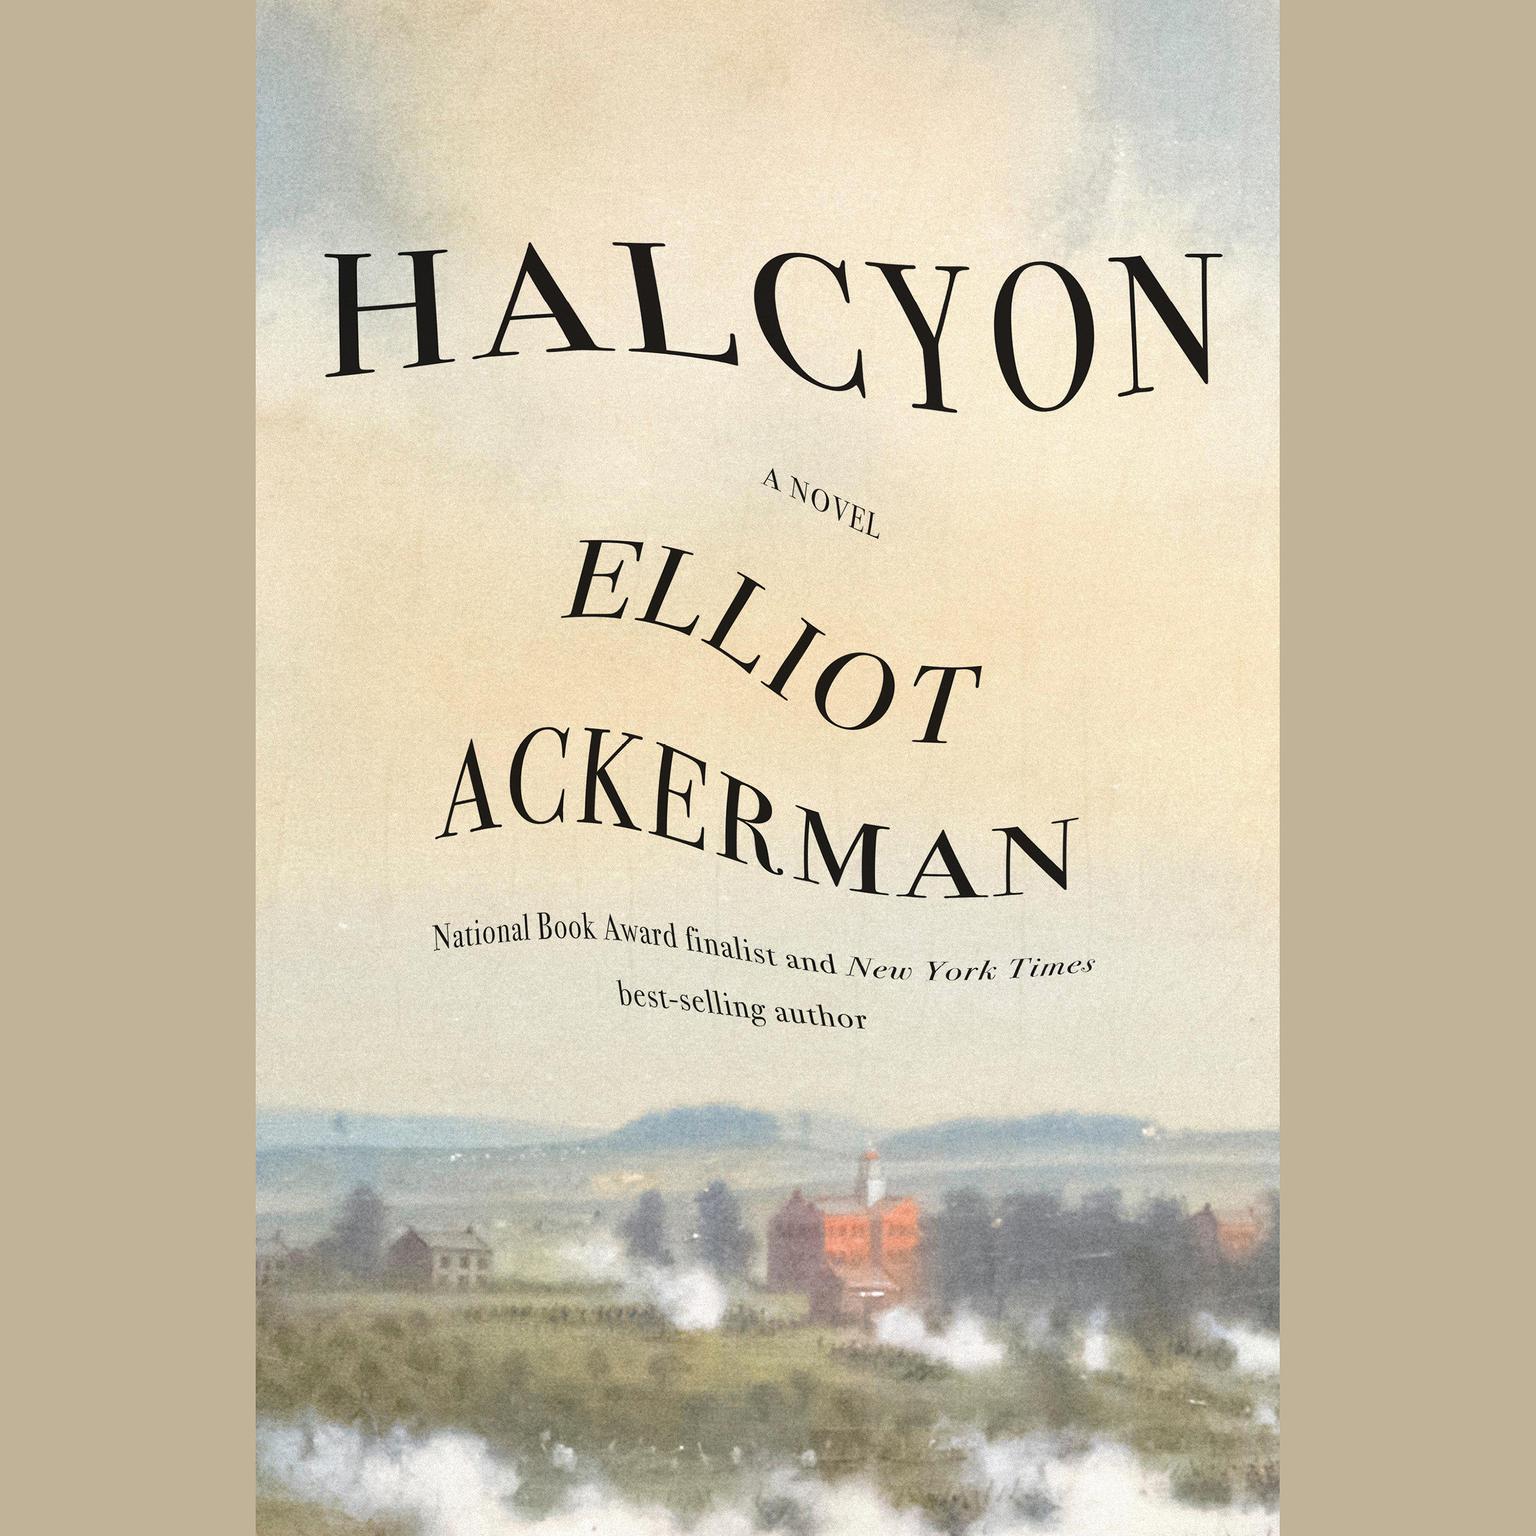 Halcyon: A novel Audiobook, by Elliot Ackerman